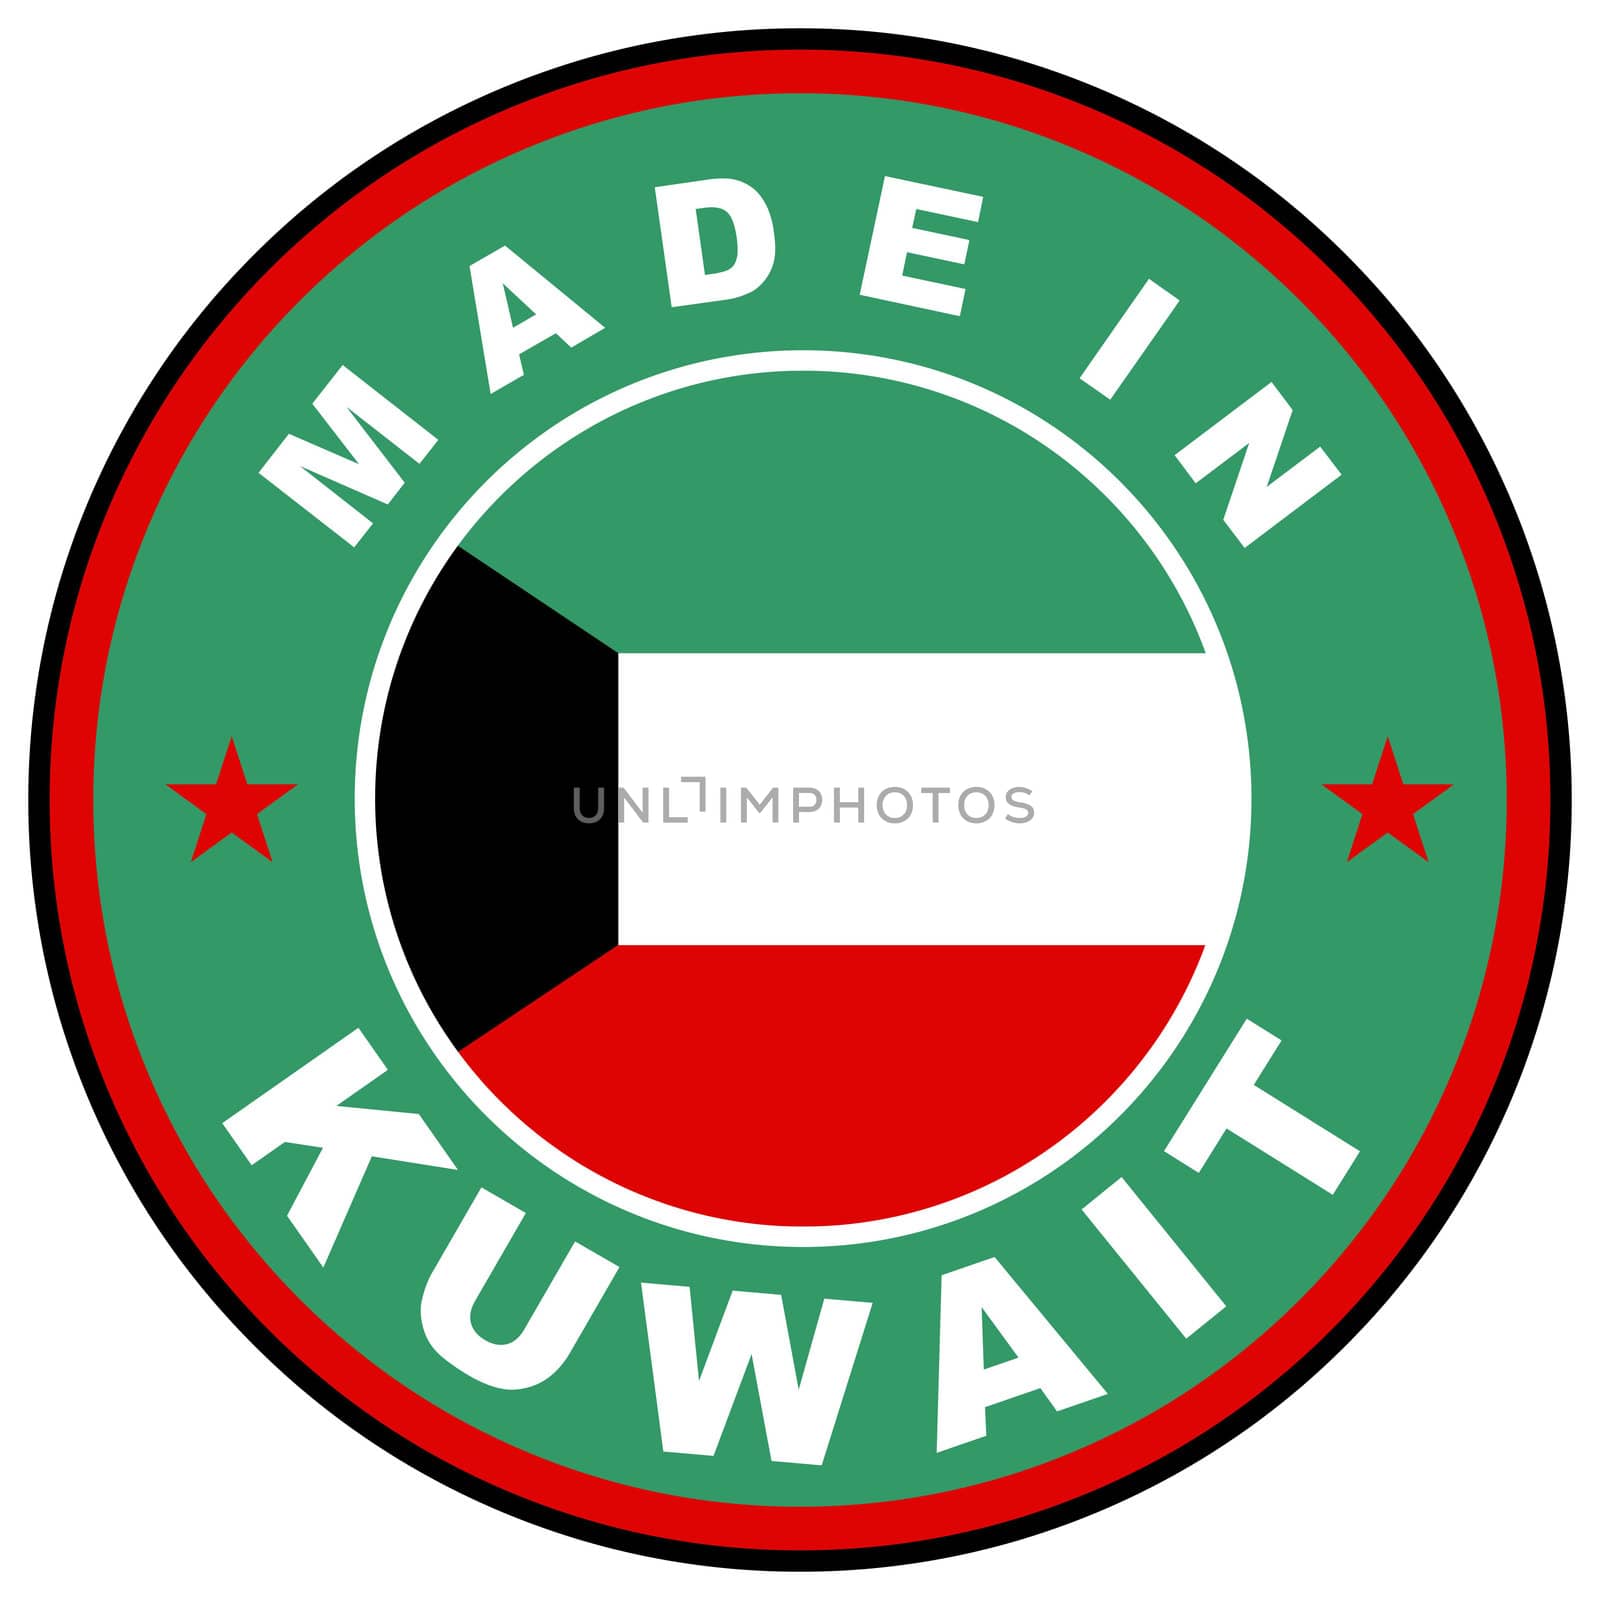 made in kuwait by tony4urban